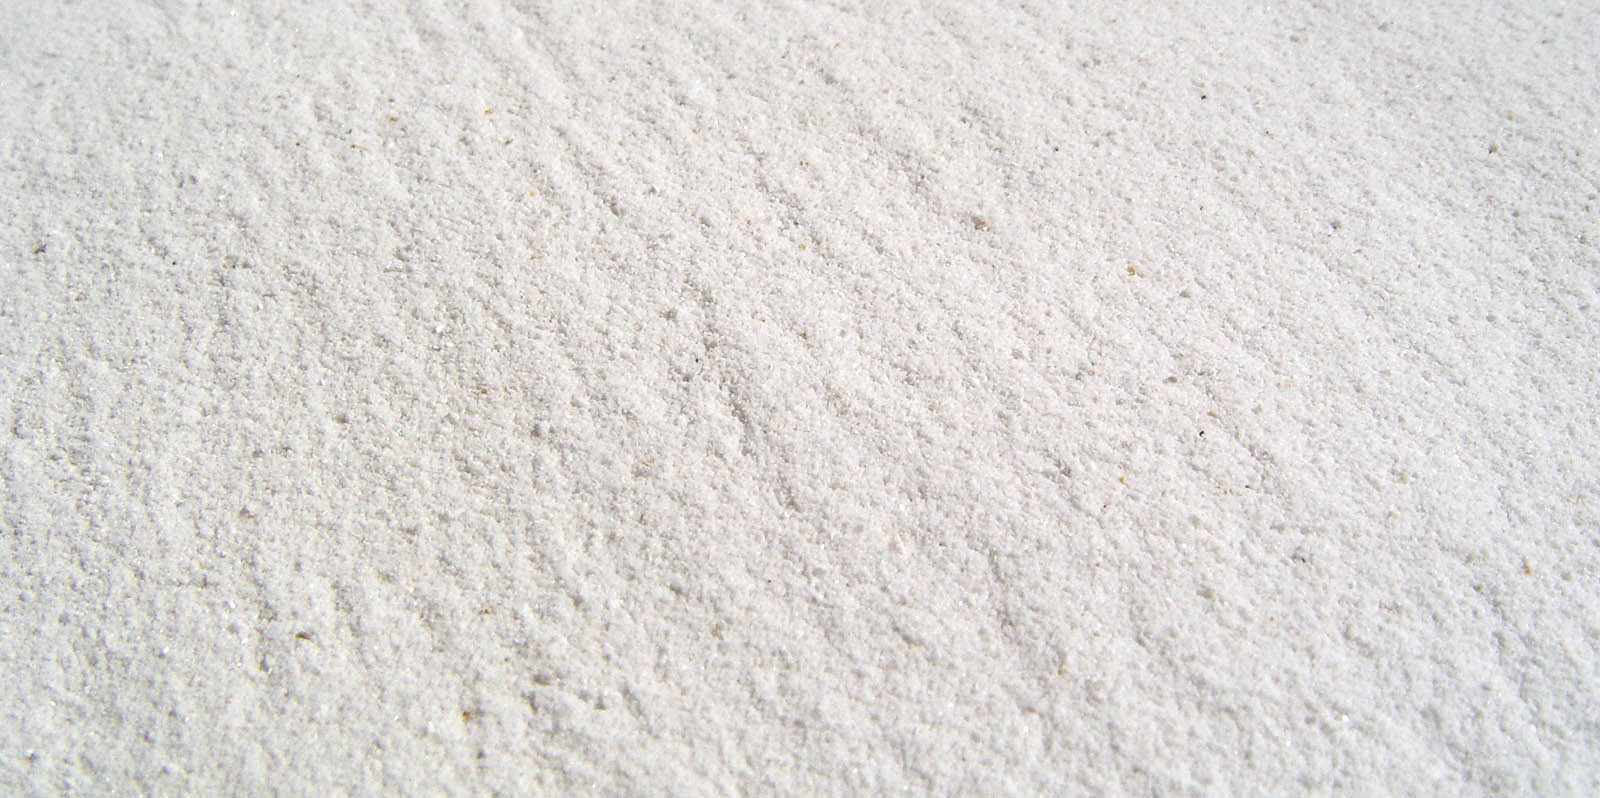 carbonato di calcio MACINATO_detail